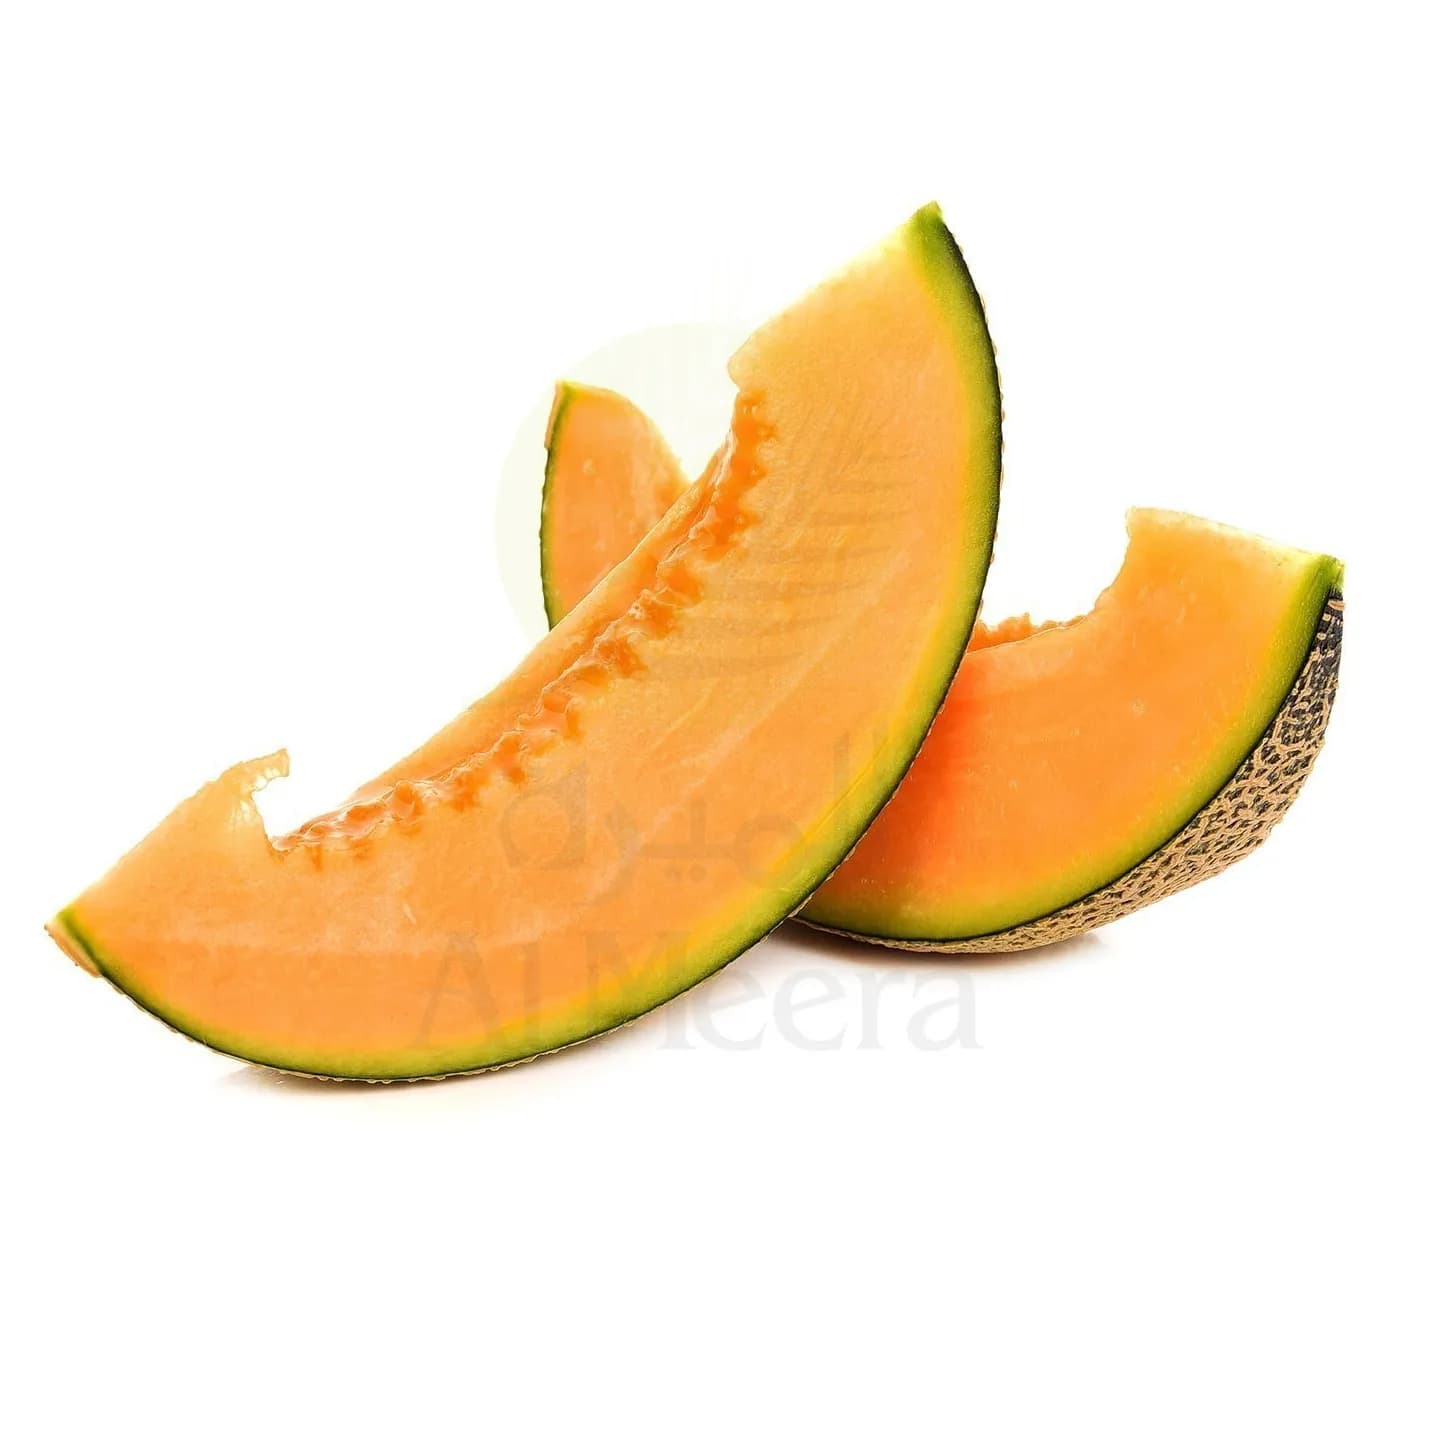 Melon Sliced, 1 Pack